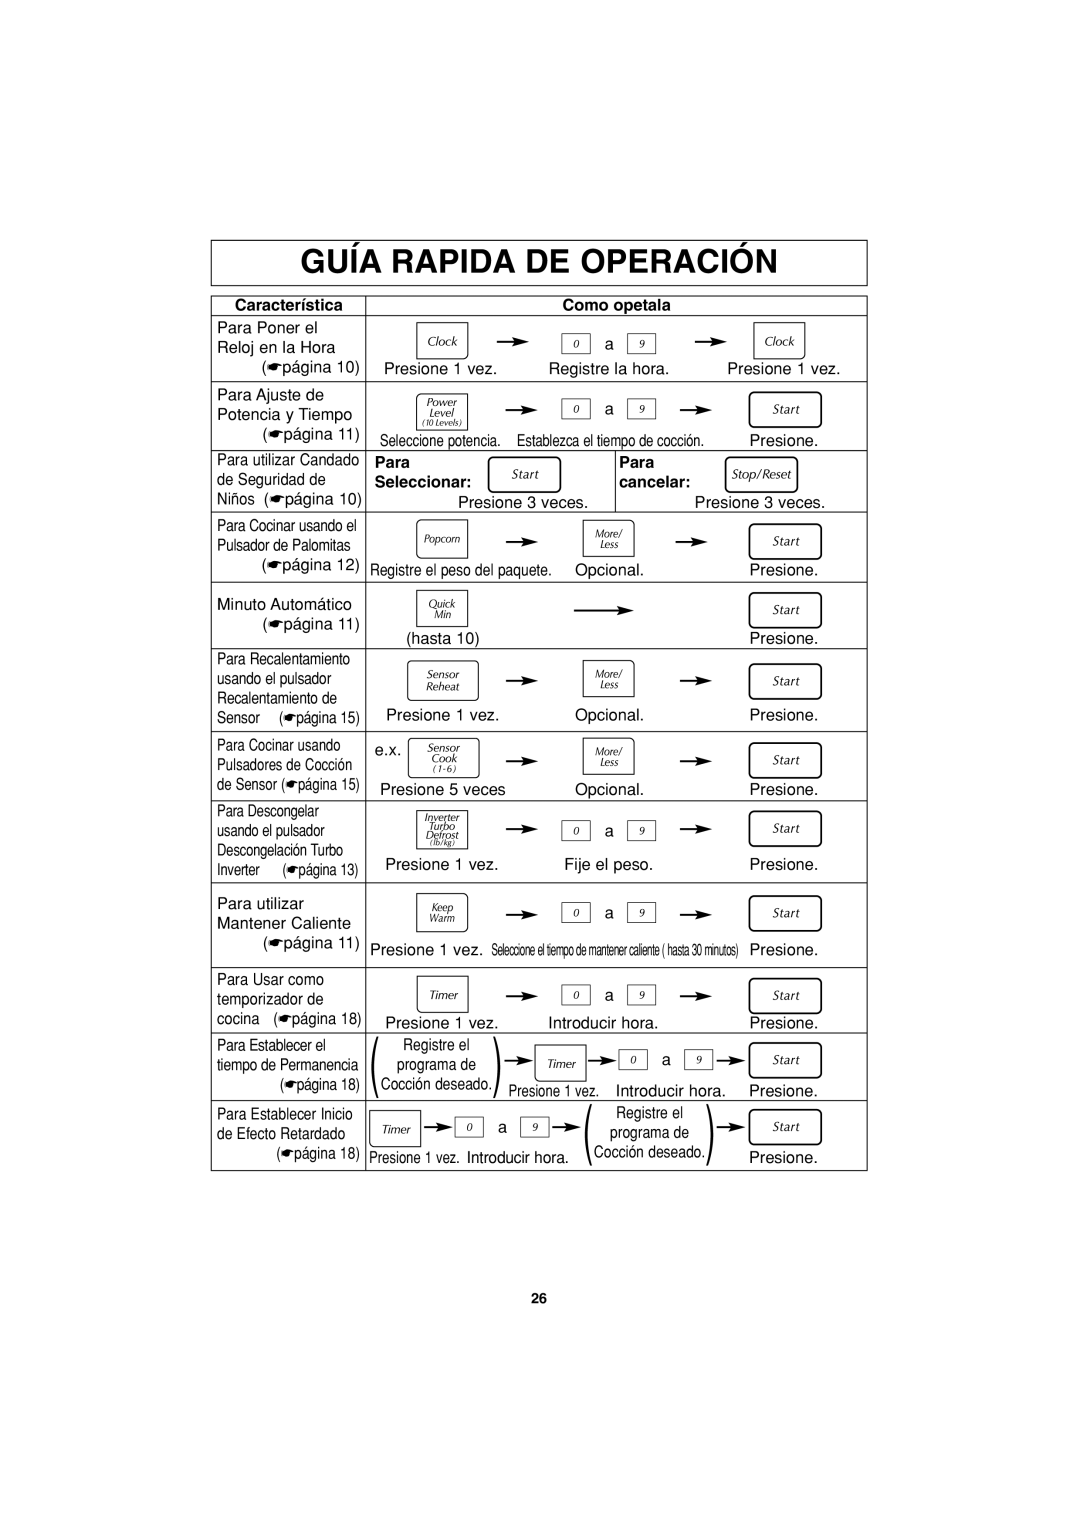 Panasonic NN-S443 Guía Rapida De Operación, Característica, Como opetala, Para, Seleccionar, cancelar 